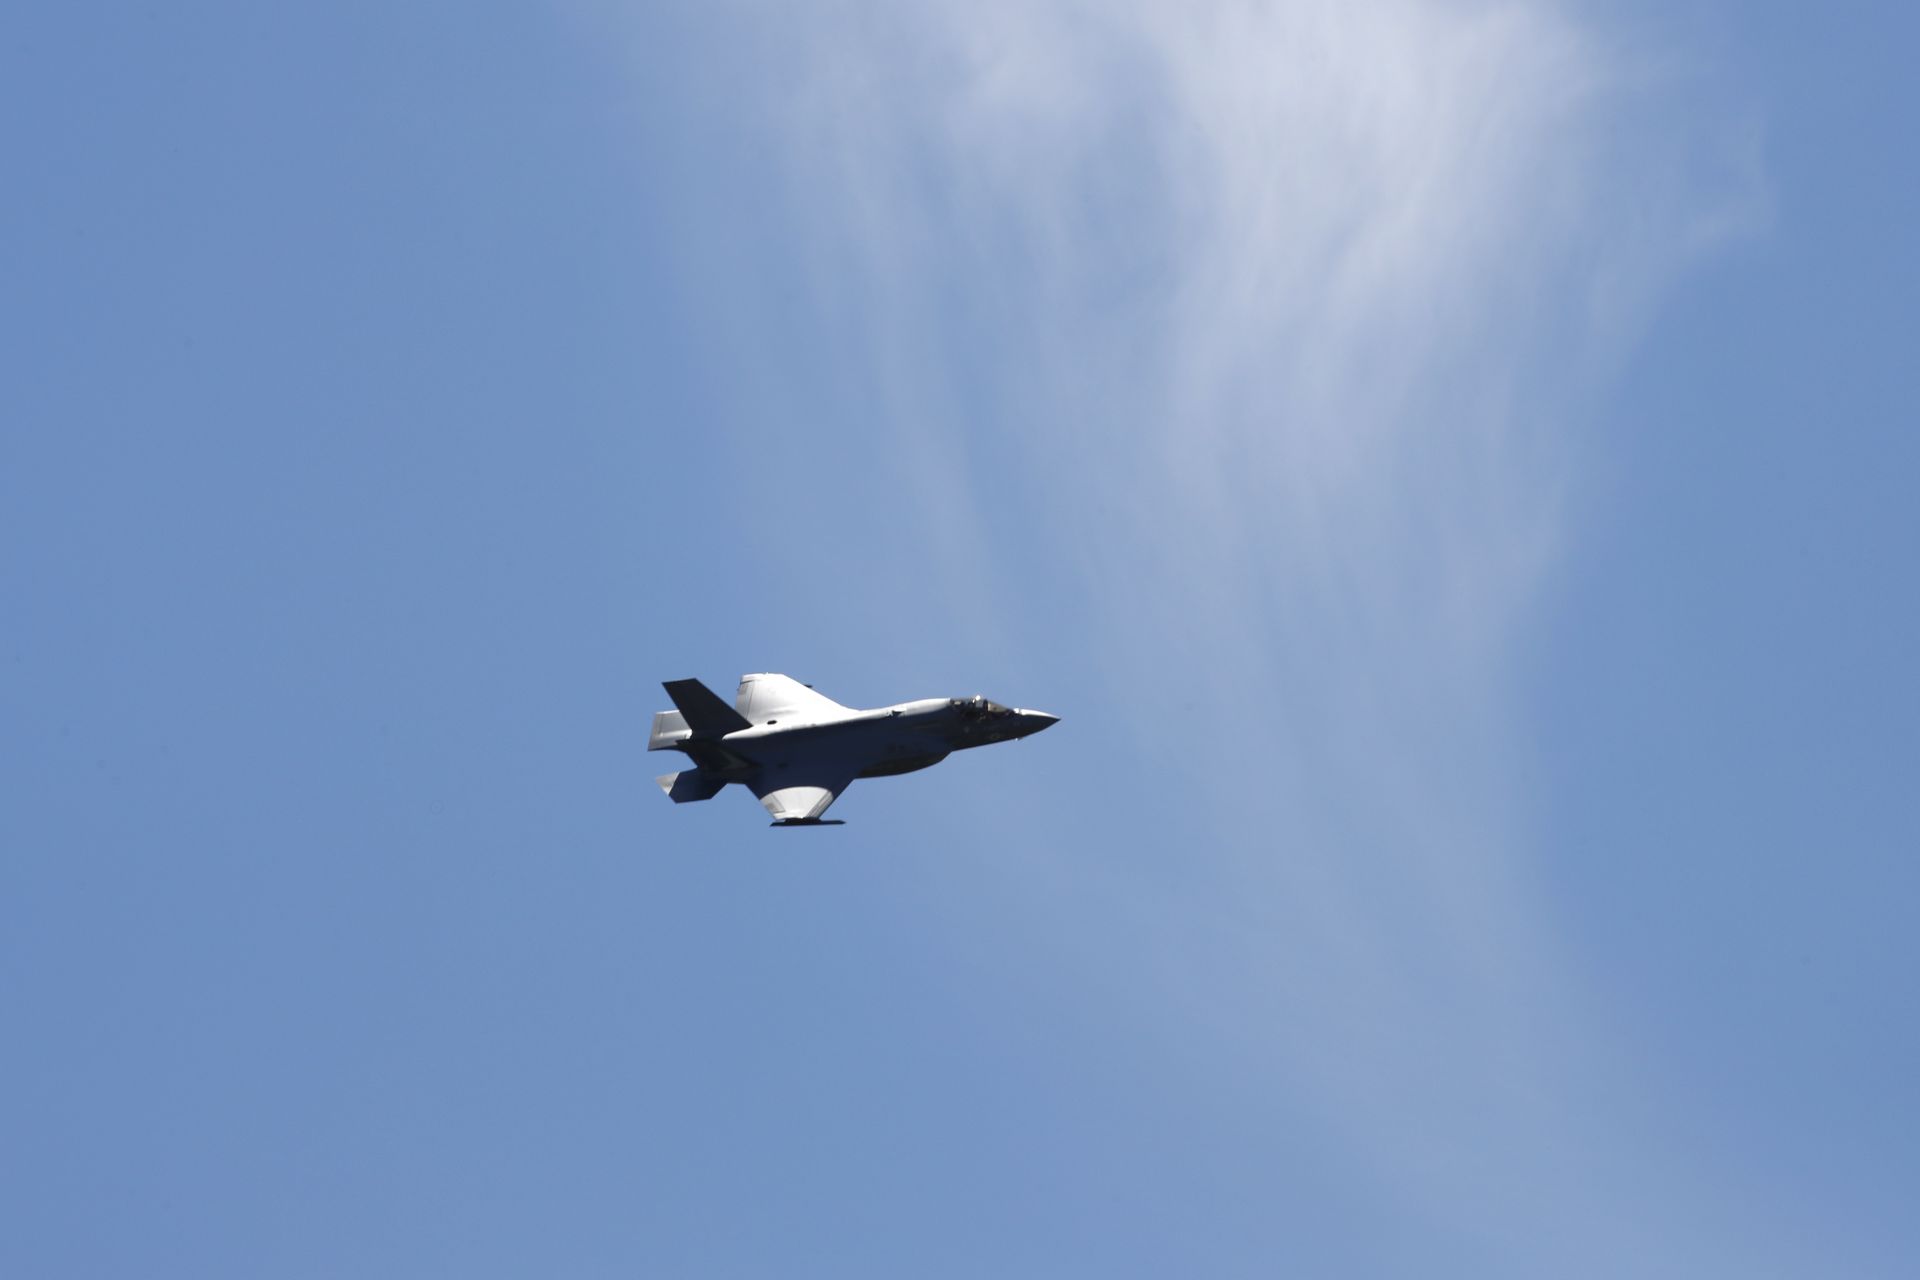 Изтребител-бомбардировач от пето поколение "F-35" извърши демонстрационен полет на малка височина над центъра на Вашингтон в чест на посещението на полския президент Анджей Дуда. Полша ще купи повече от 30 такива самолети